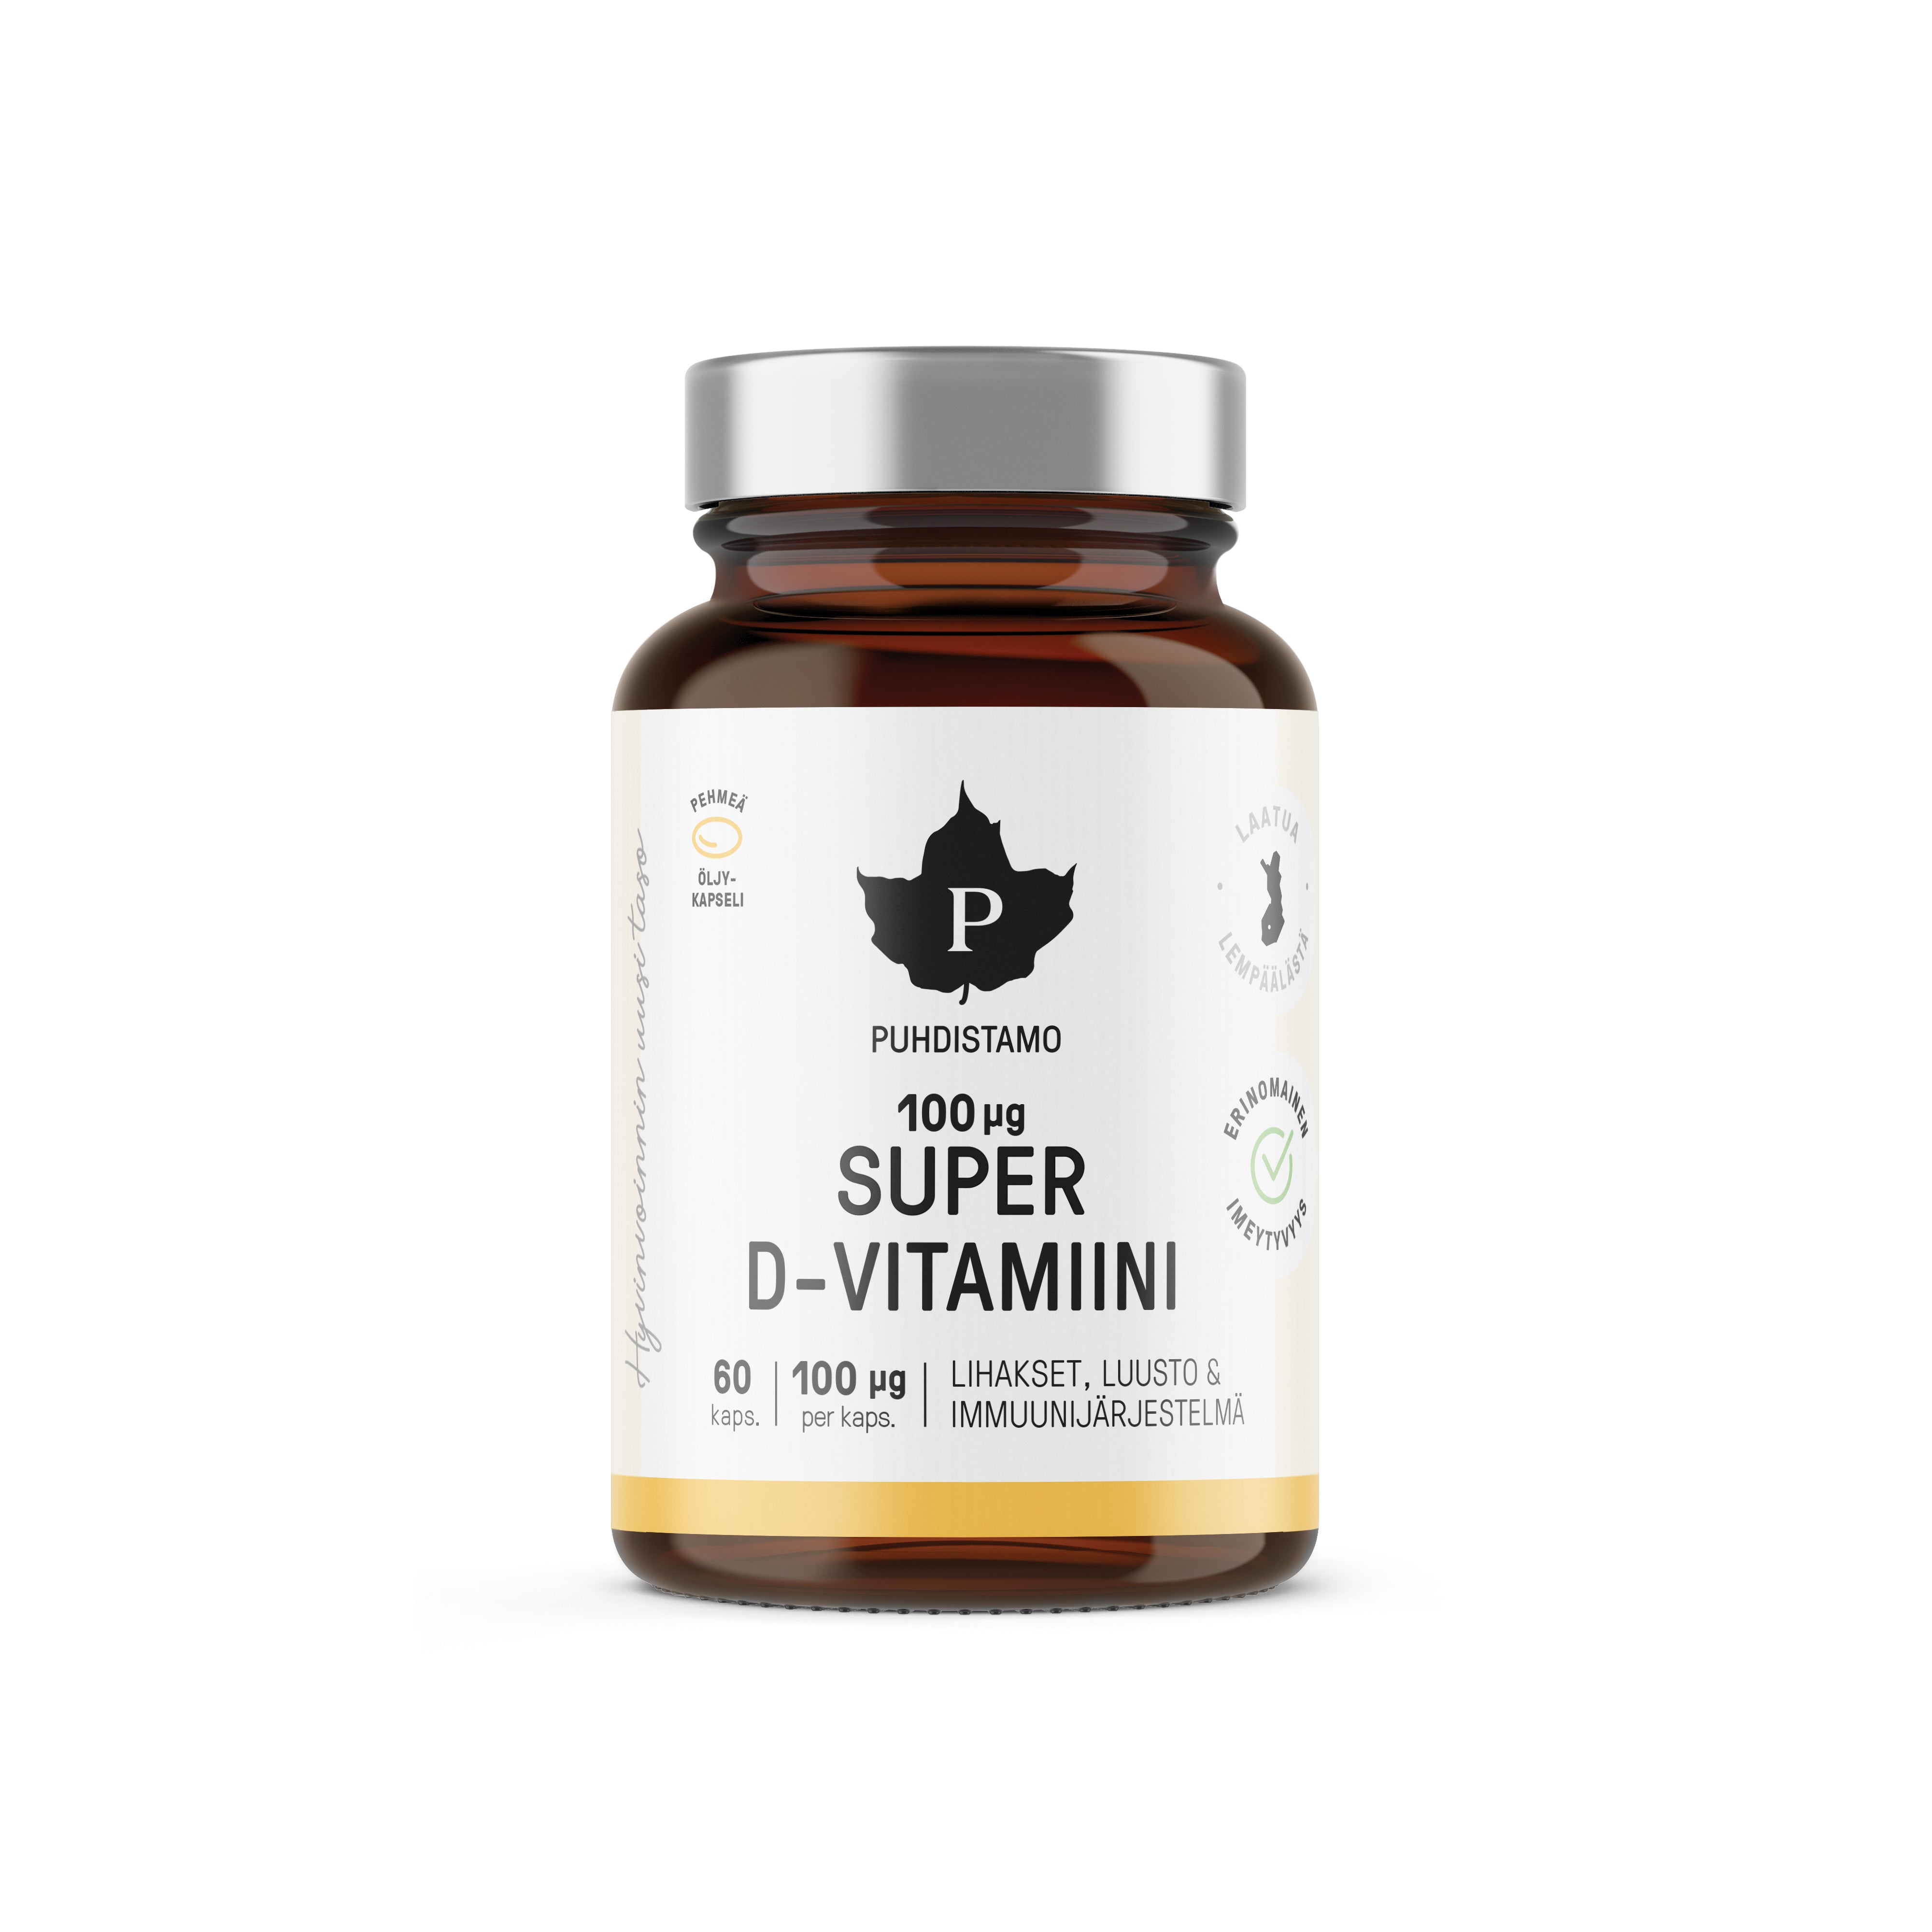 Image of Puhdistamo Super D-vitamiini 100 mikrog